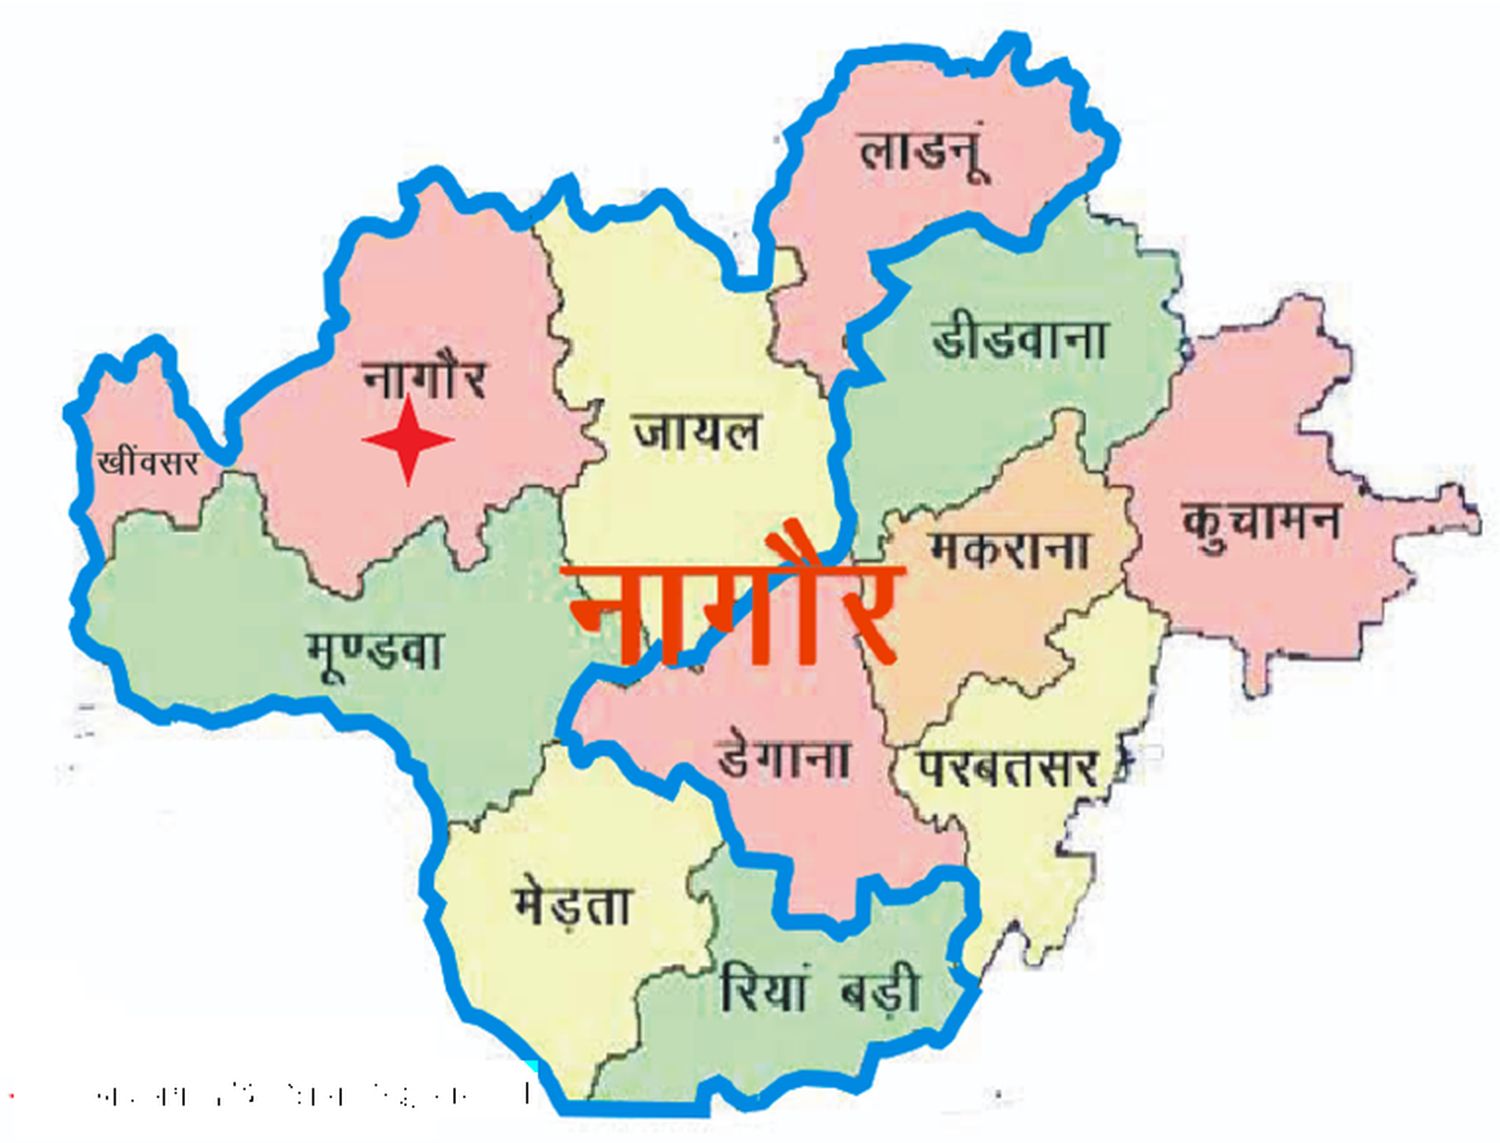 नागौर के दो जिले बनाने की चल रही थी मशक्कत, आ गए पांच जिले बनाने के प्रस्ताव, पढिए पूरी रिपोर्ट